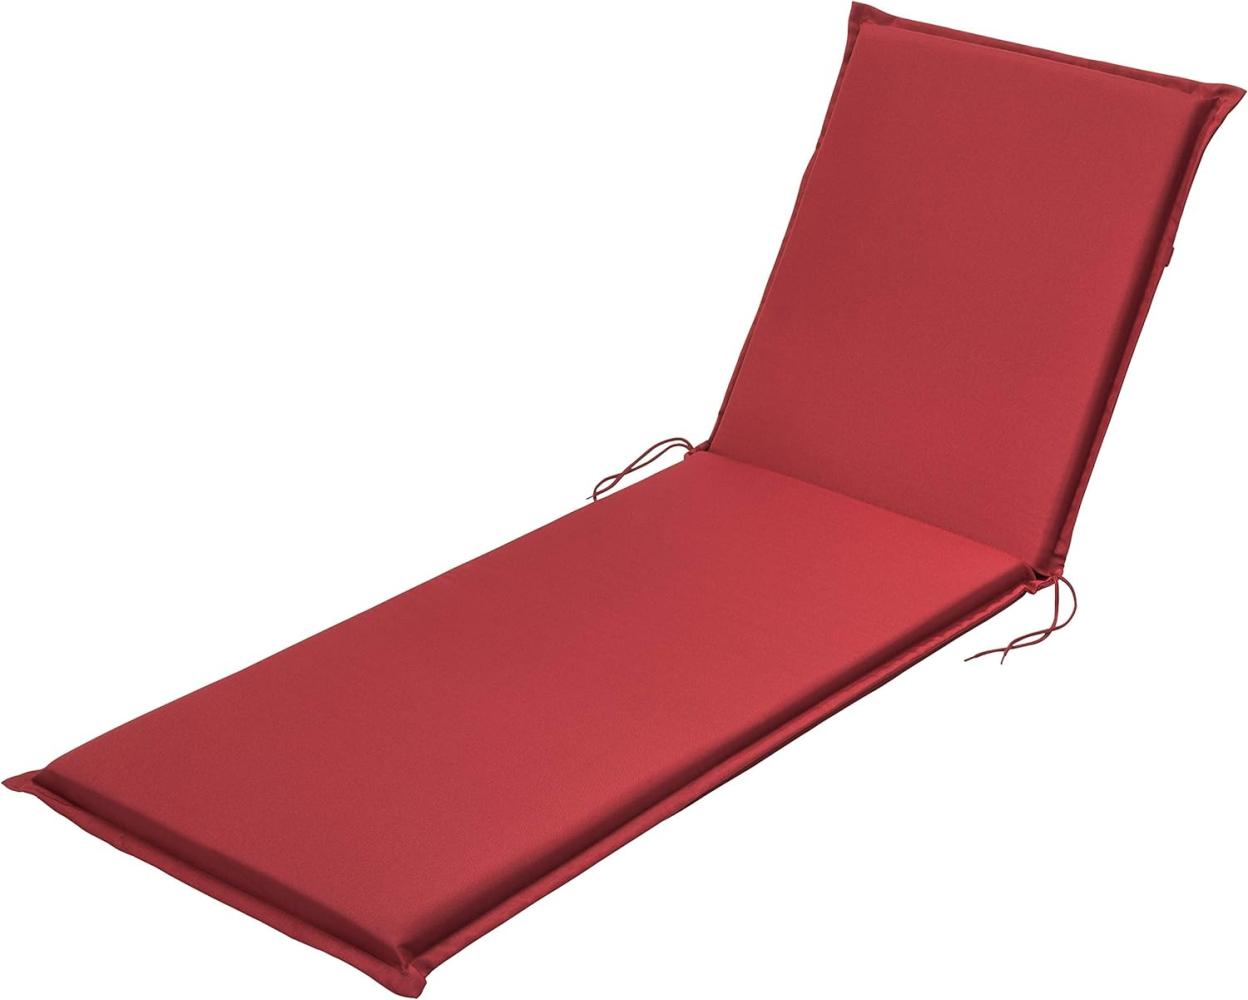 Traumnacht Komfort Liegenauflage Outdoor rot mit abnehmbarem Bezug, 190 x 58 x 6 cm, Öko-Tex zertifiziert, produziert nach deutschem Qualitätsstandard Bild 1